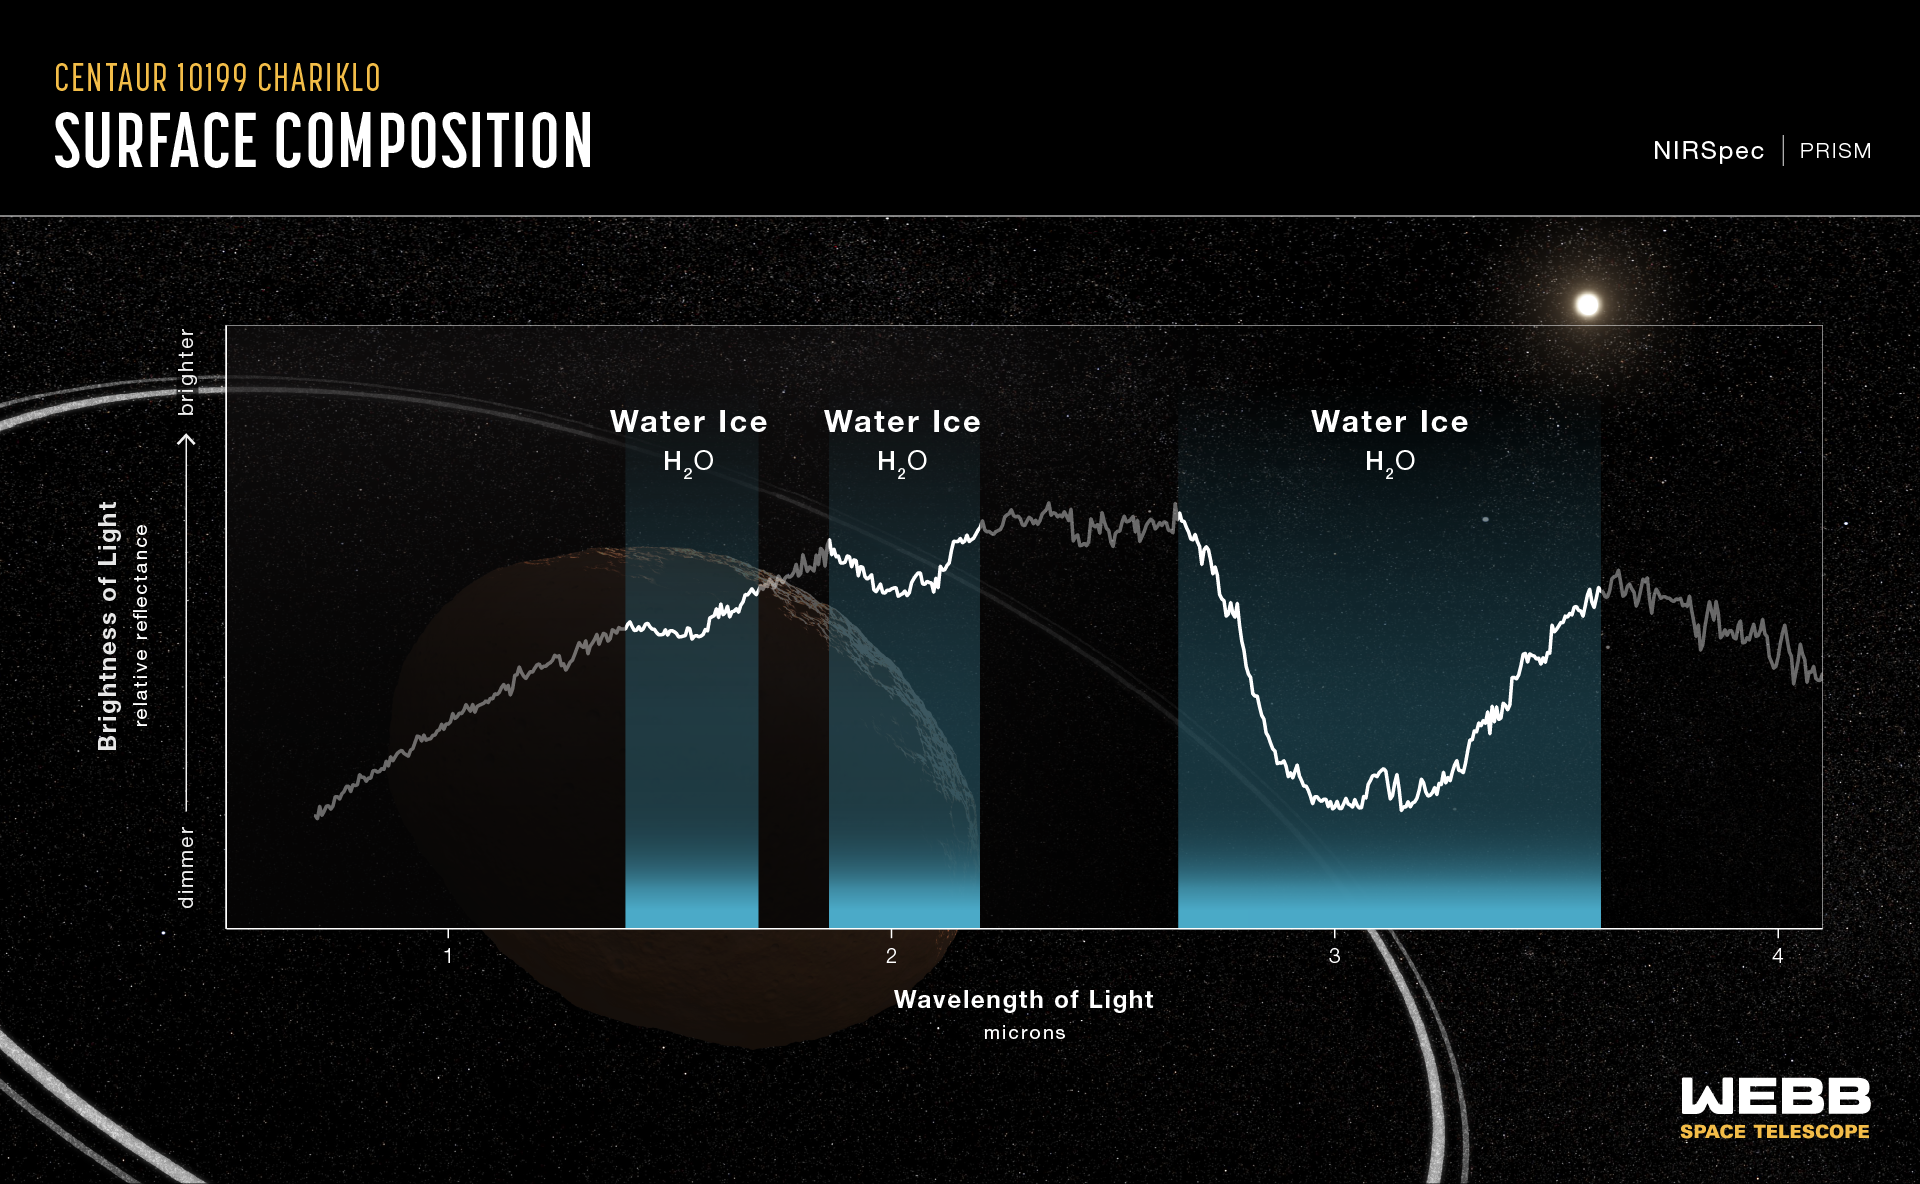 2022 年 10 月 31 日に近赤外ウェブ分光計 (NIRSpec) によってキャプチャされたケンタウロス 10199 カリクロ二重リングの反射スペクトル。このスペクトルは、カリクロの表面に結晶化した水氷の明確な証拠を示しています。